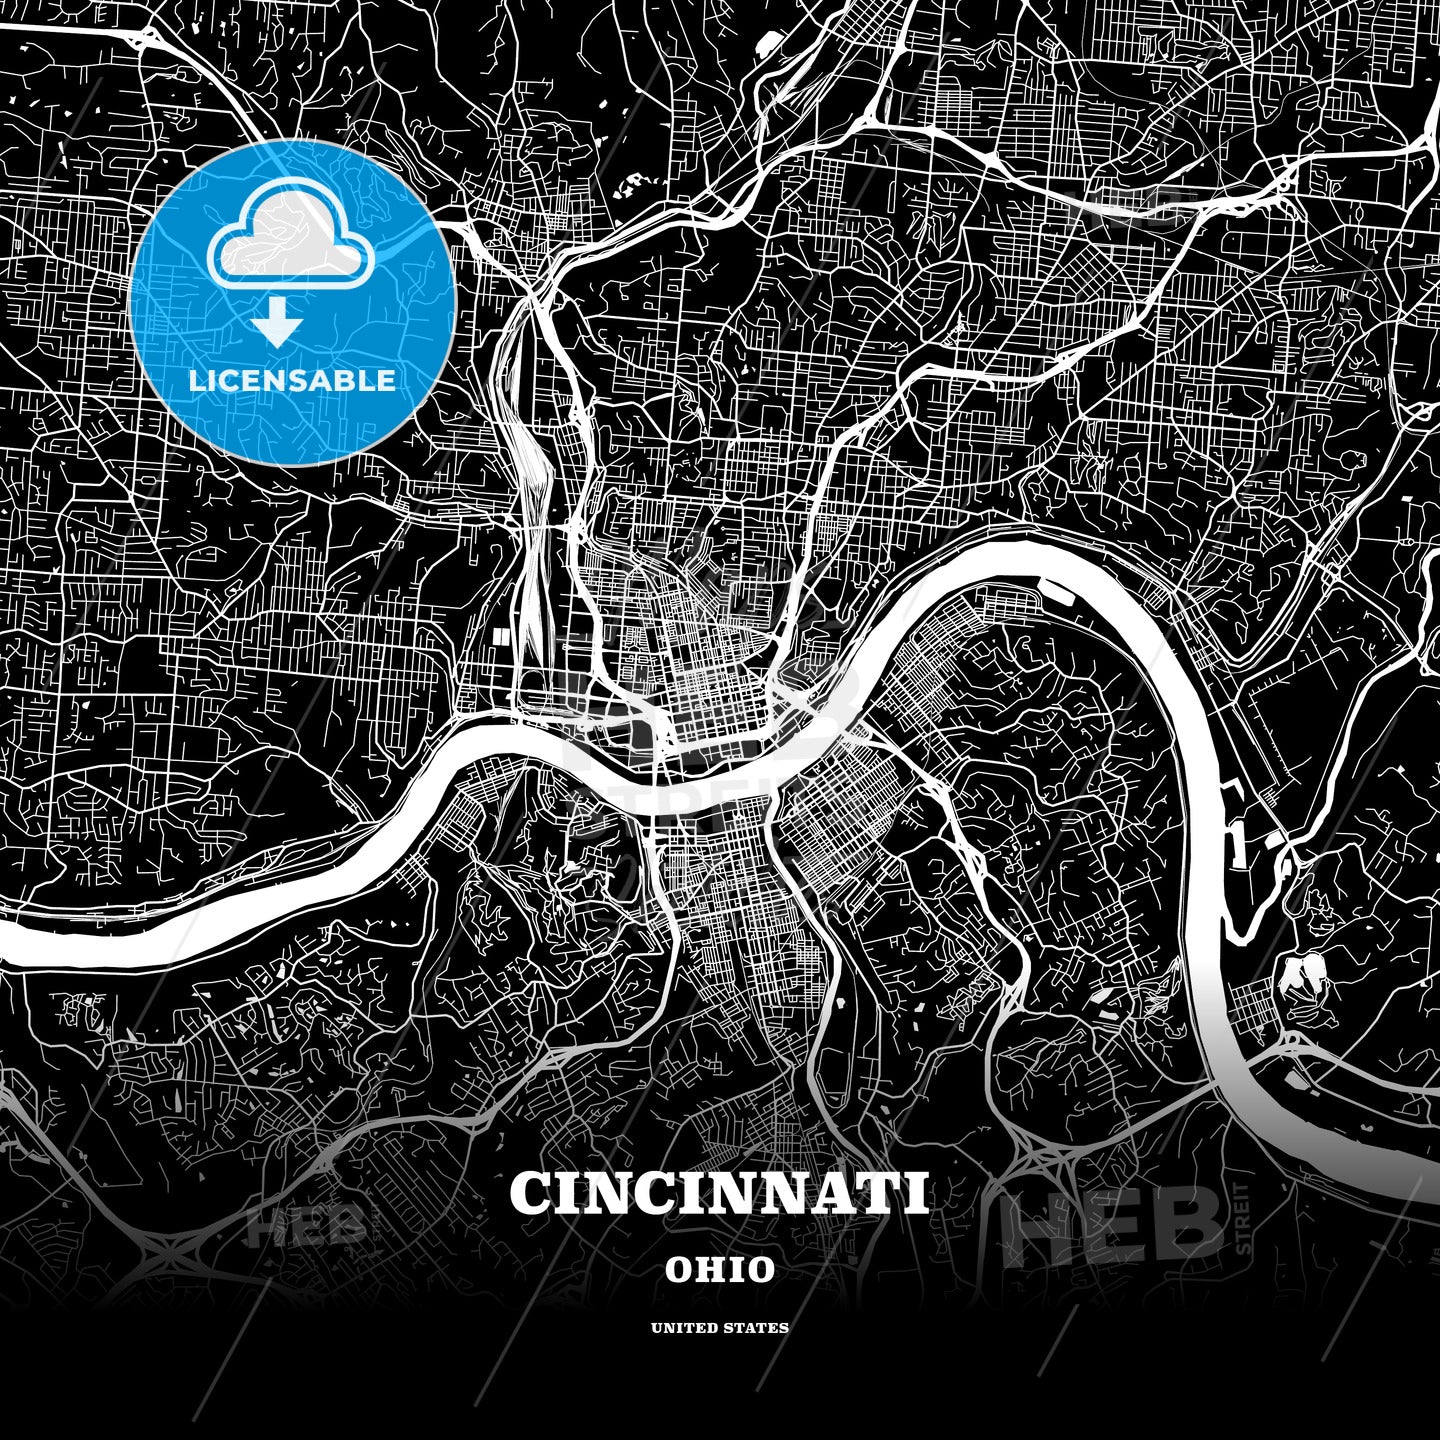 Cincinnati, Ohio, USA map